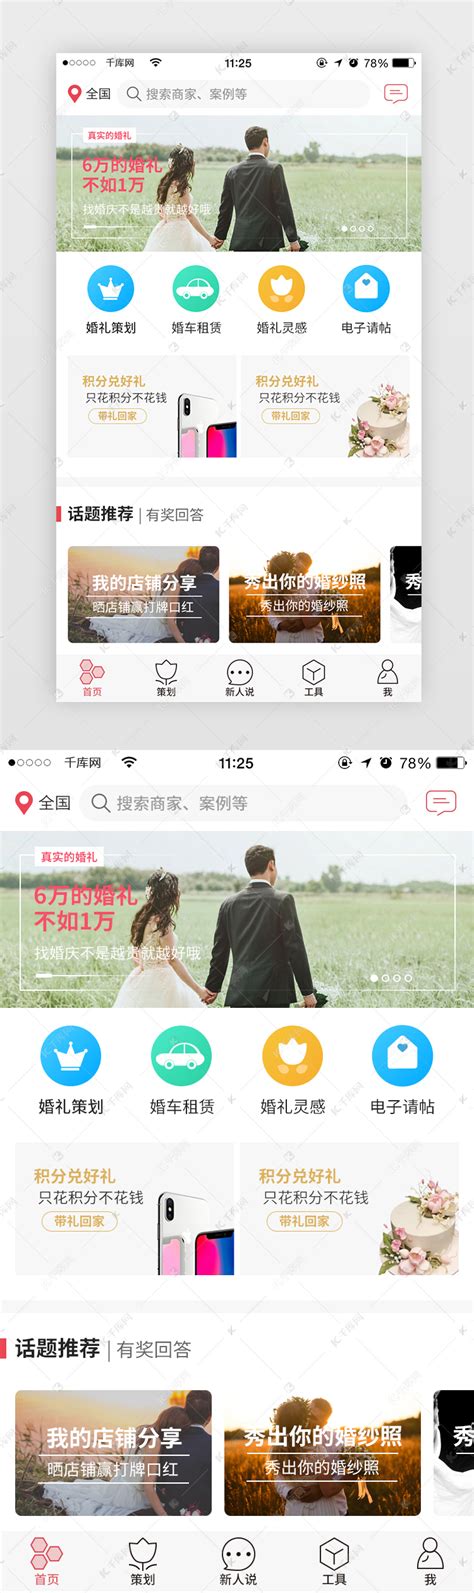 婚礼策划师iPad应用程序界面设计 - - 大美工dameigong.cn